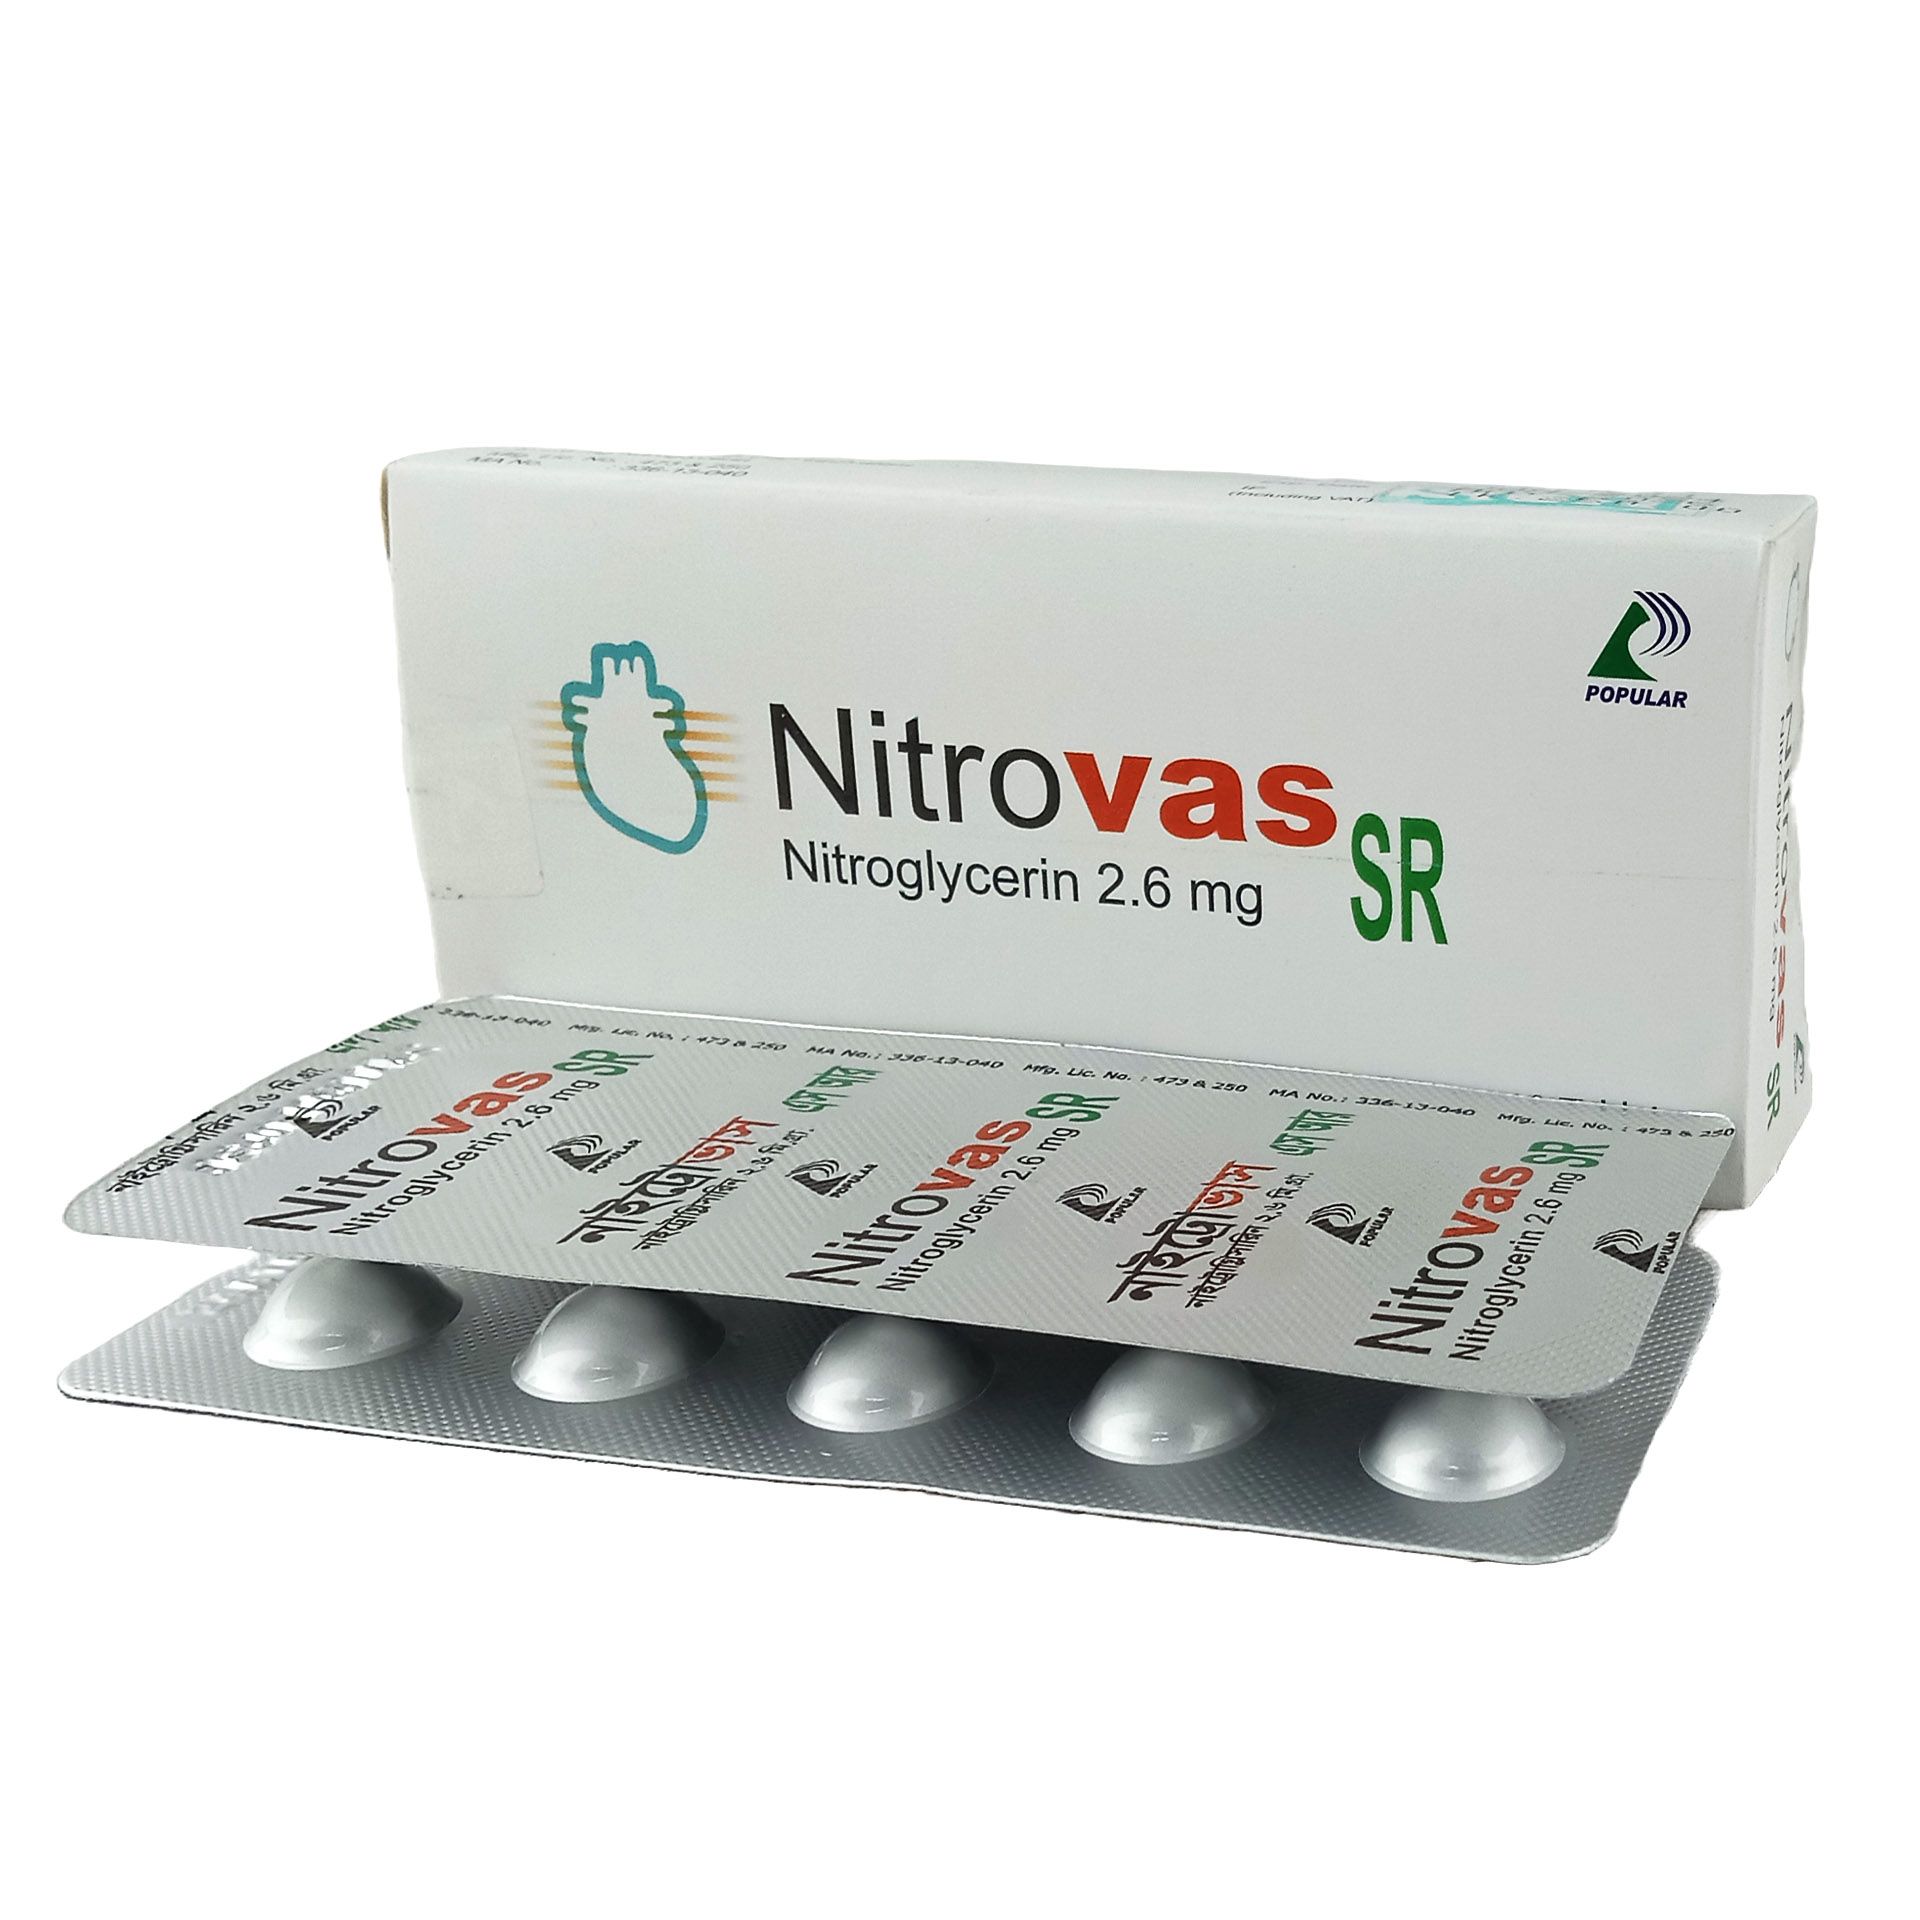 Nitrovas SR 2.6mg Tablet